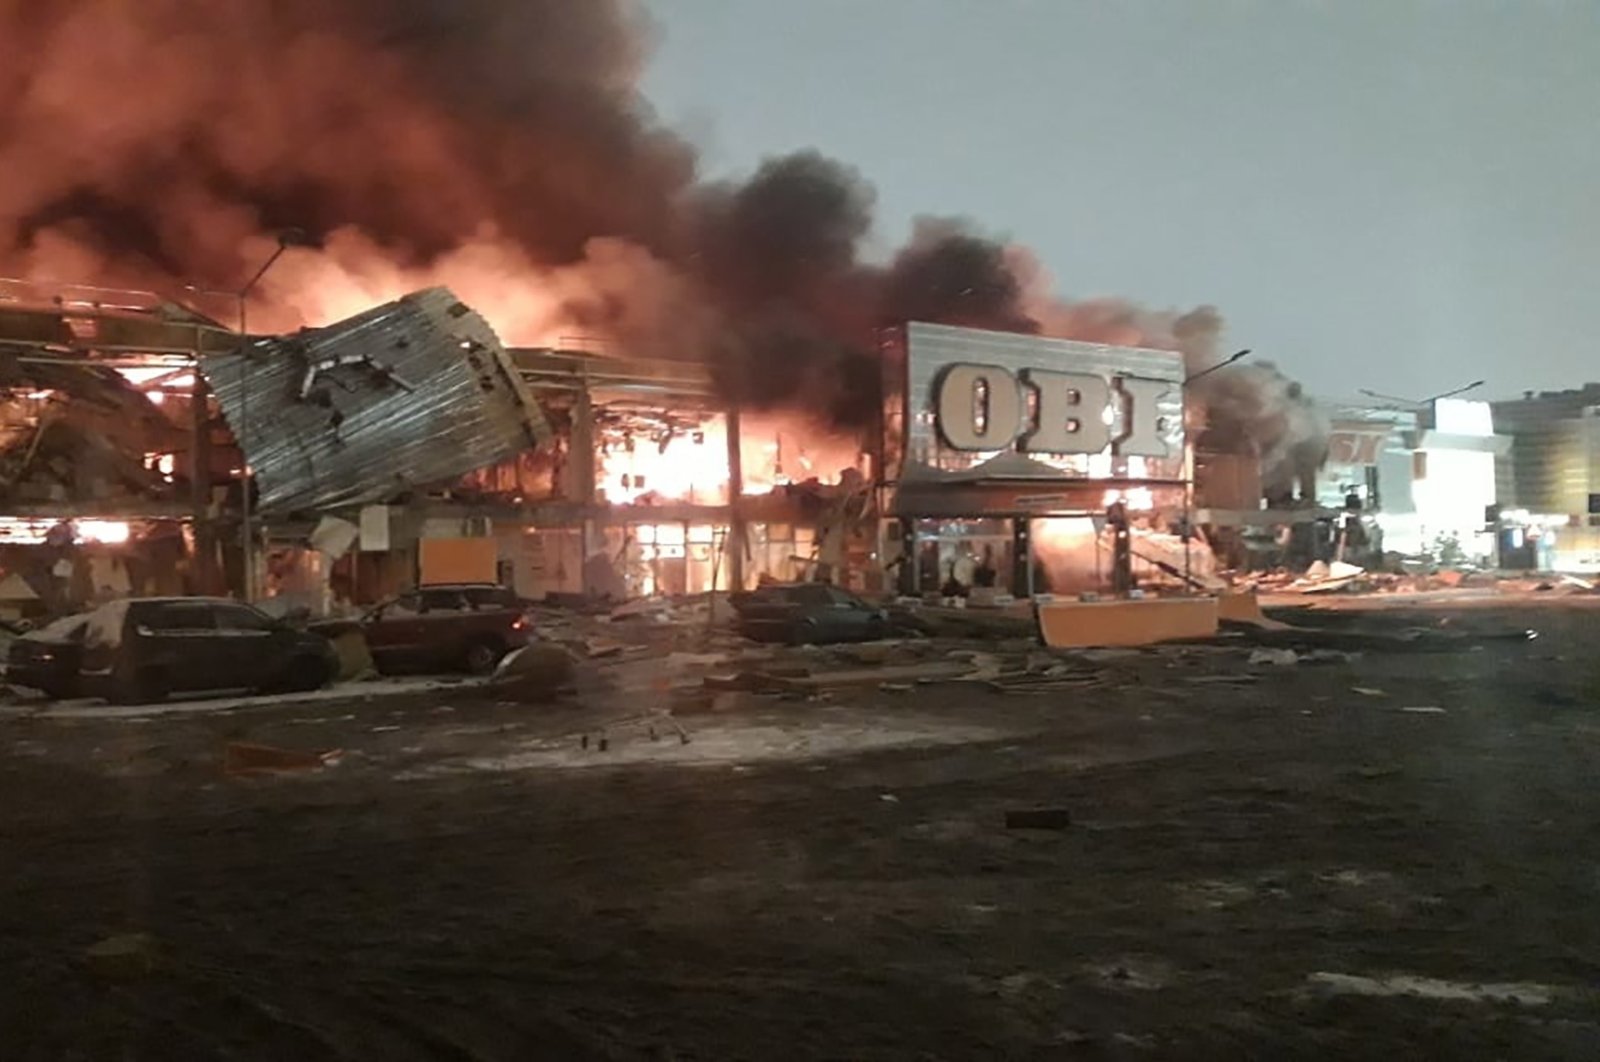 Kebakaran besar terjadi di pusat perbelanjaan Moskow, 1 tewas